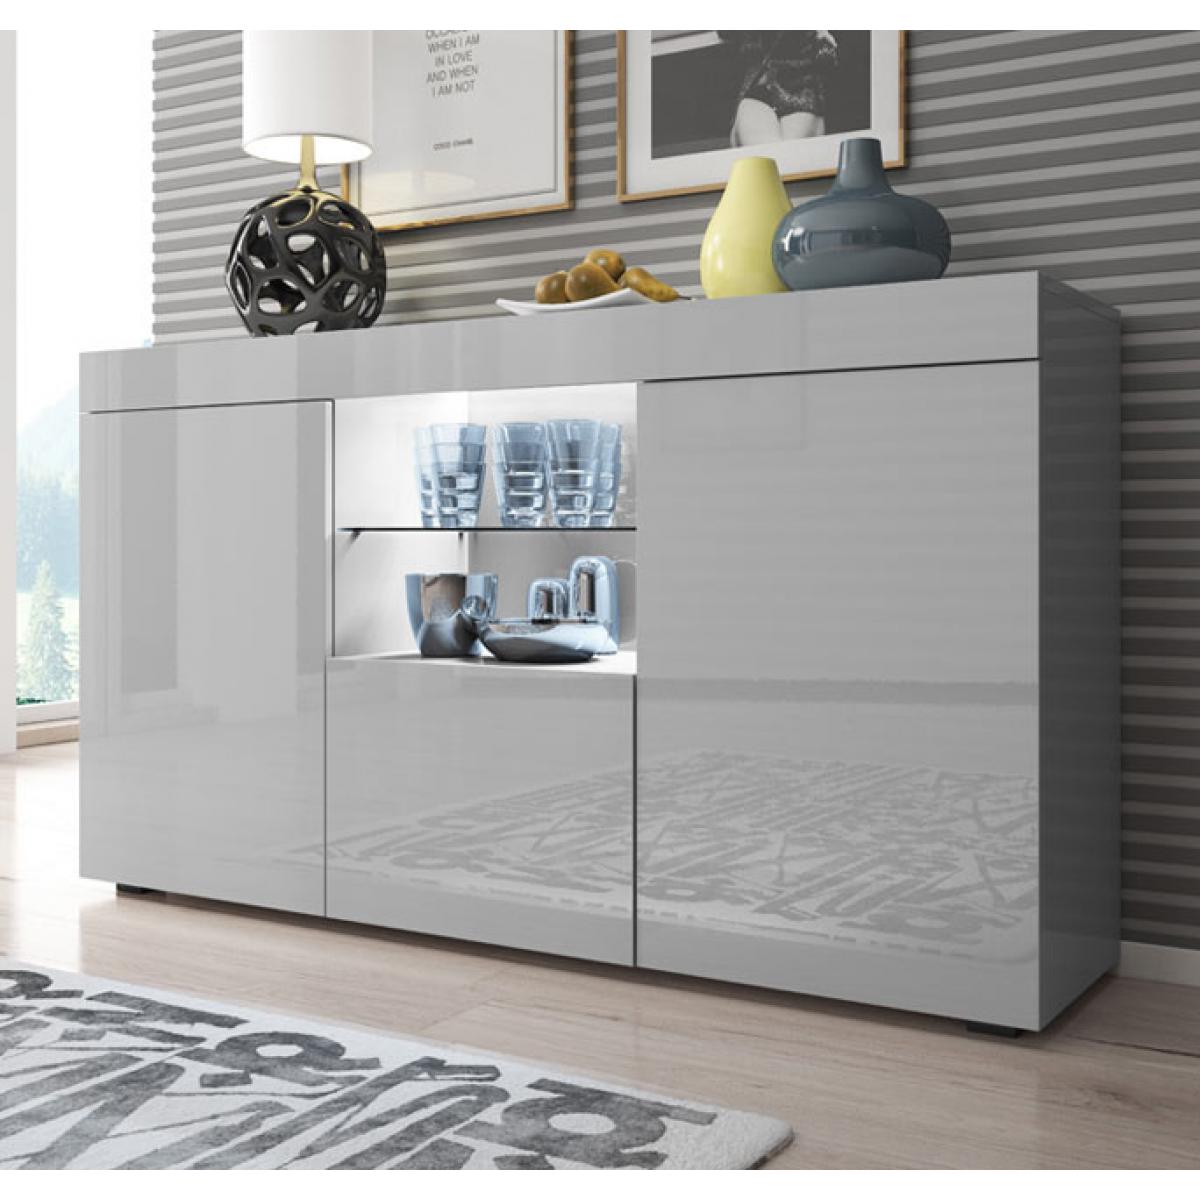 Design Ameublement - Buffet Bahut modèle Sefora couleur gris 135x70cm. - Buffets, chiffonniers